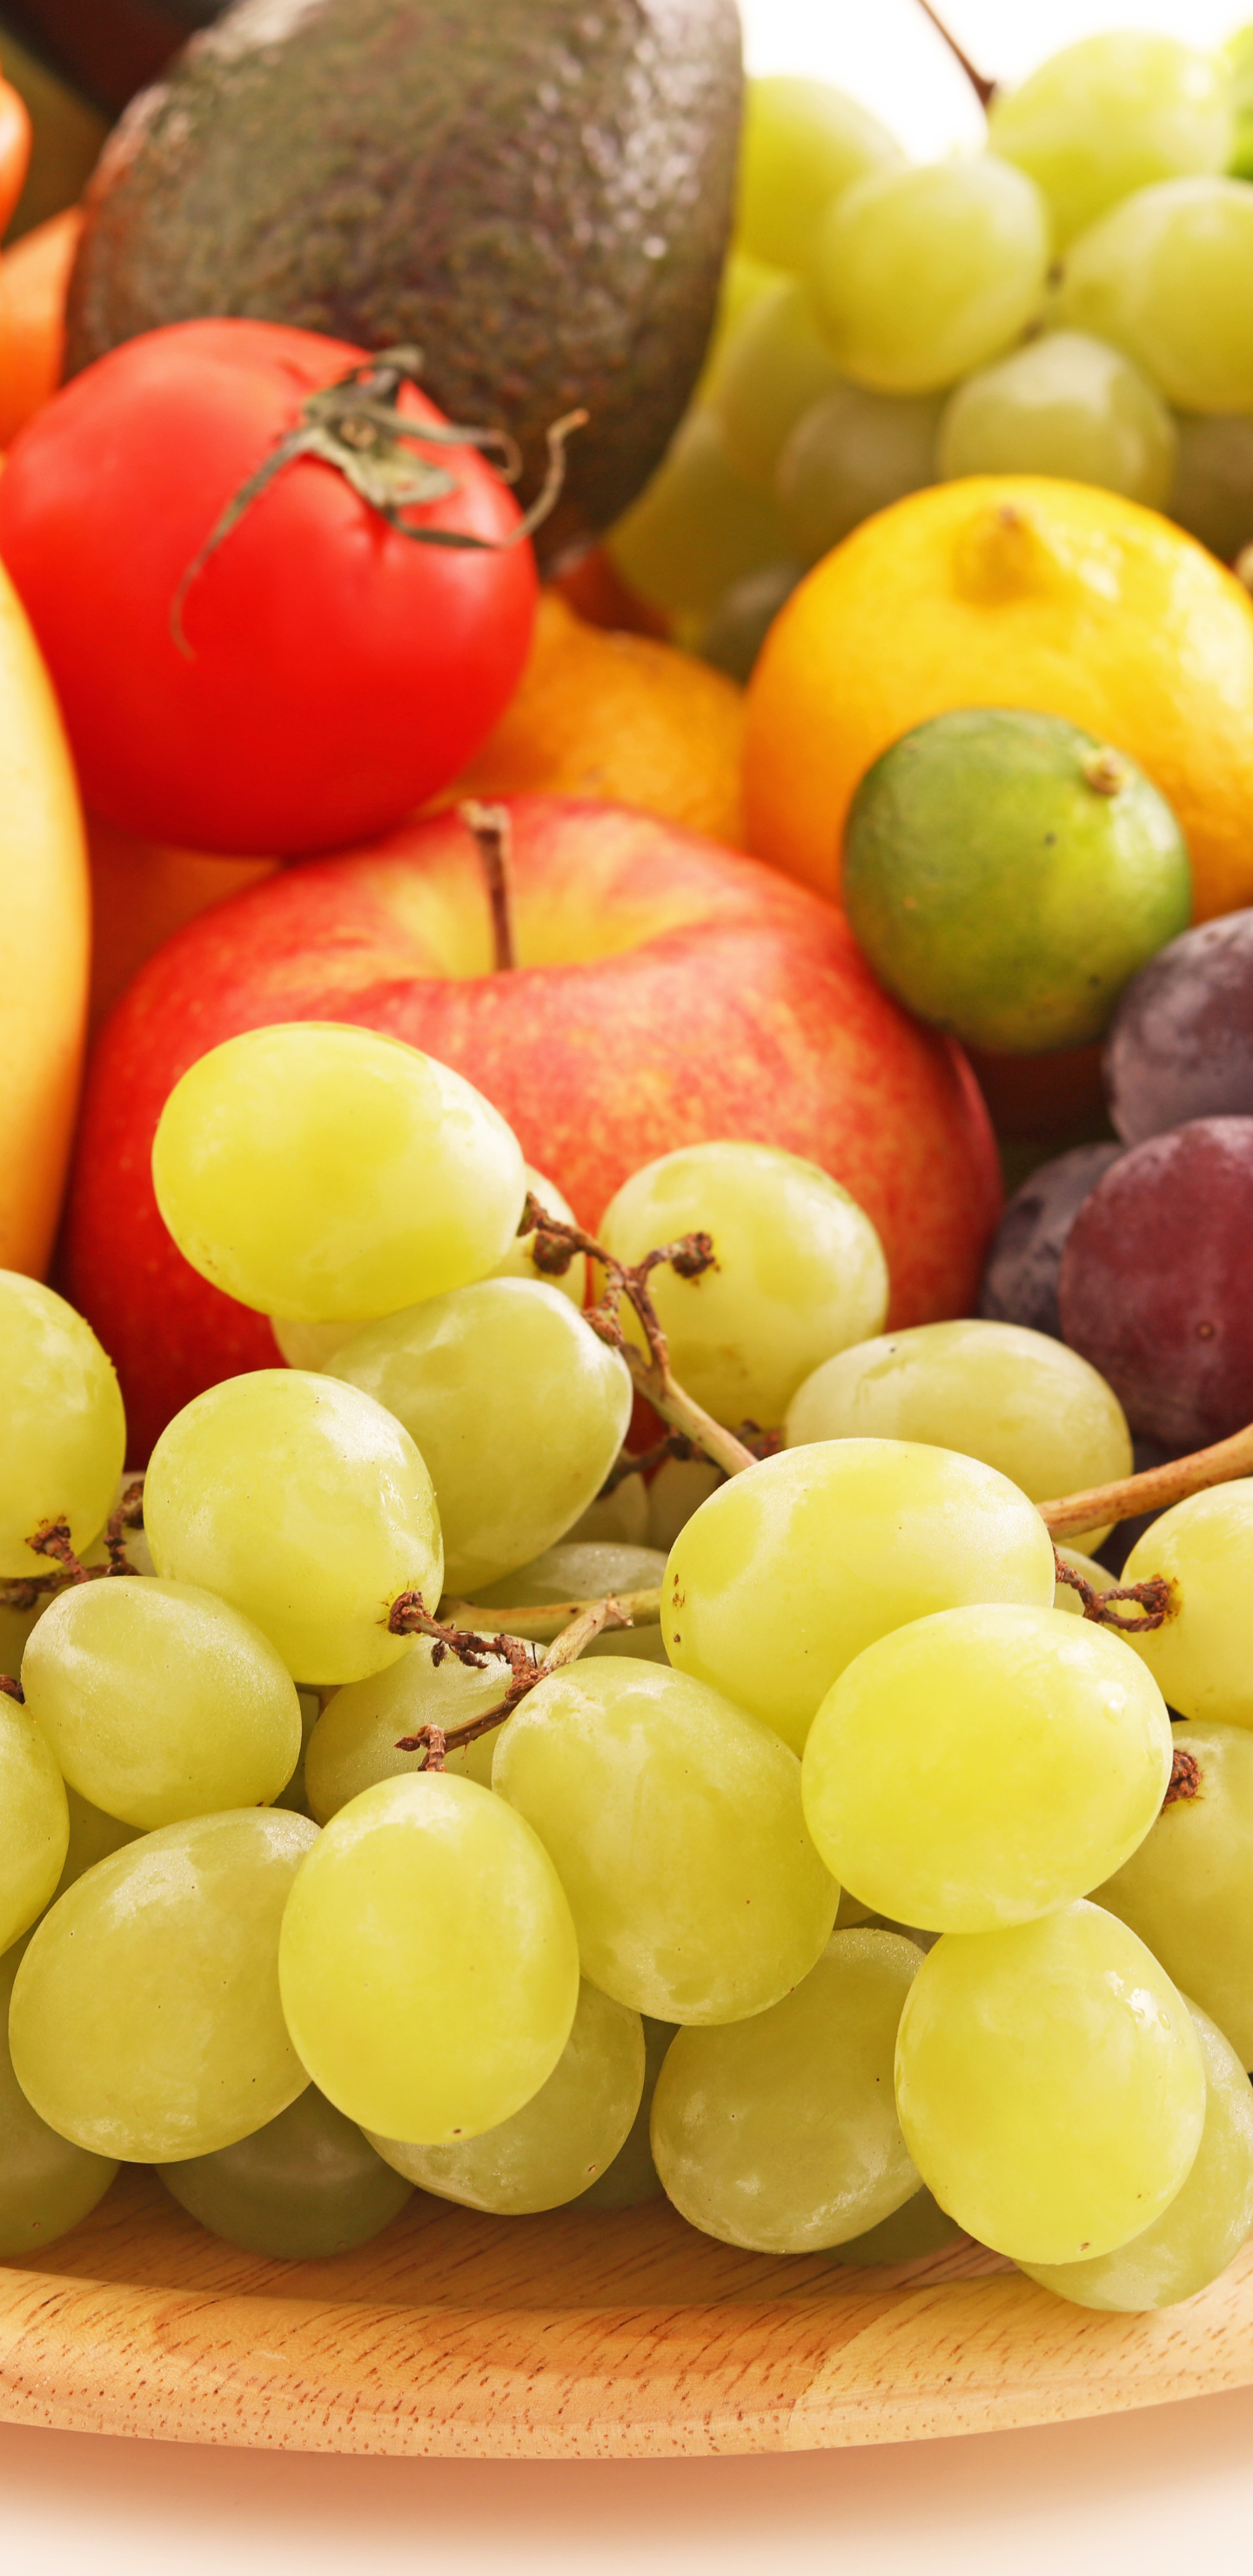 Download mobile wallpaper Fruits, Food, Apple, Grapes, Fruit, Vegetable, Fruits & Vegetables for free.